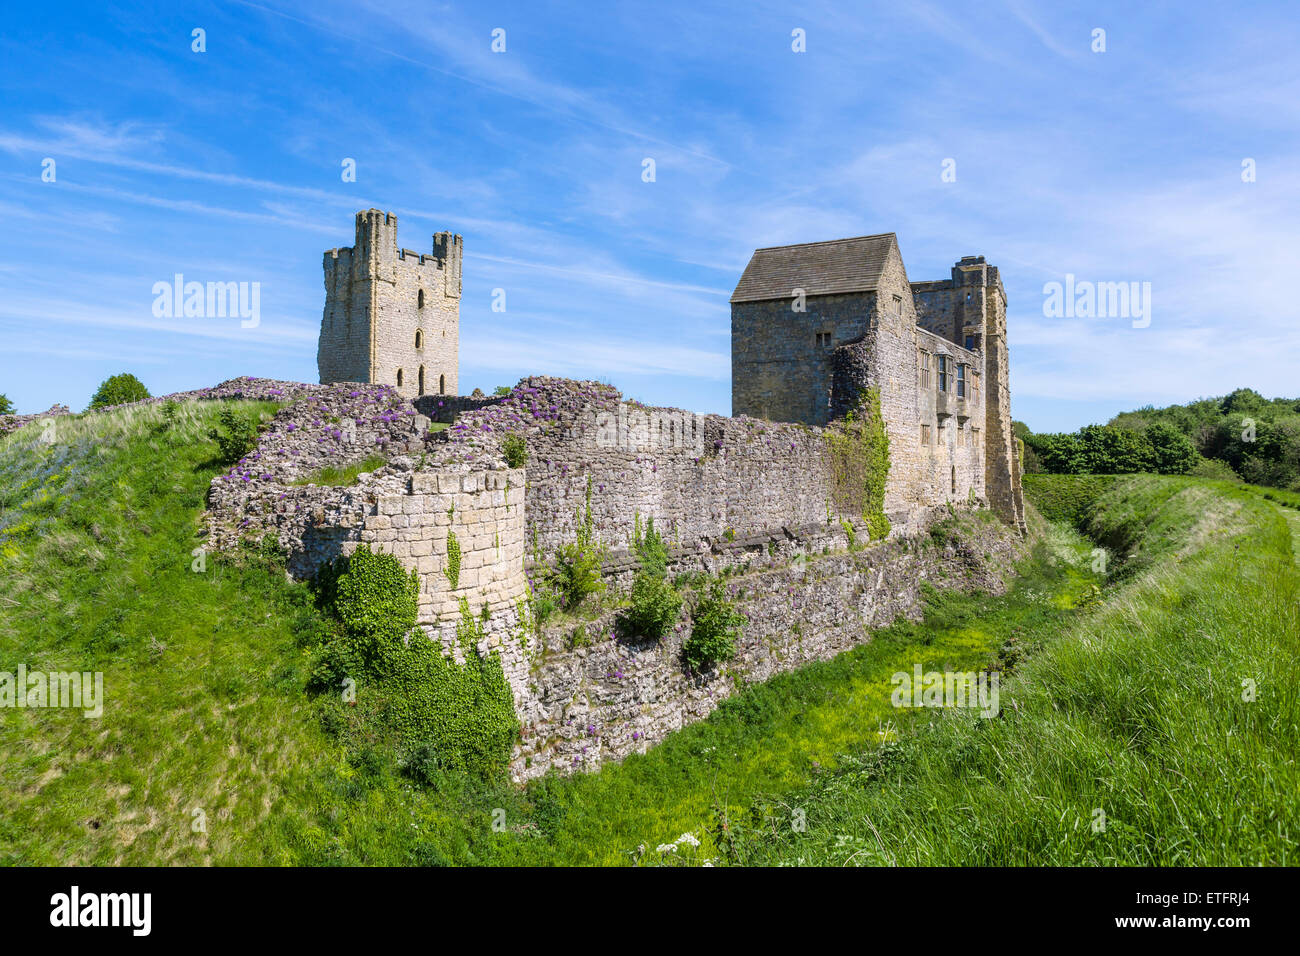 Les ruines de la ville médiévale de Helmsley Castle, Helmsley, North Yorkshire, England, UK Banque D'Images